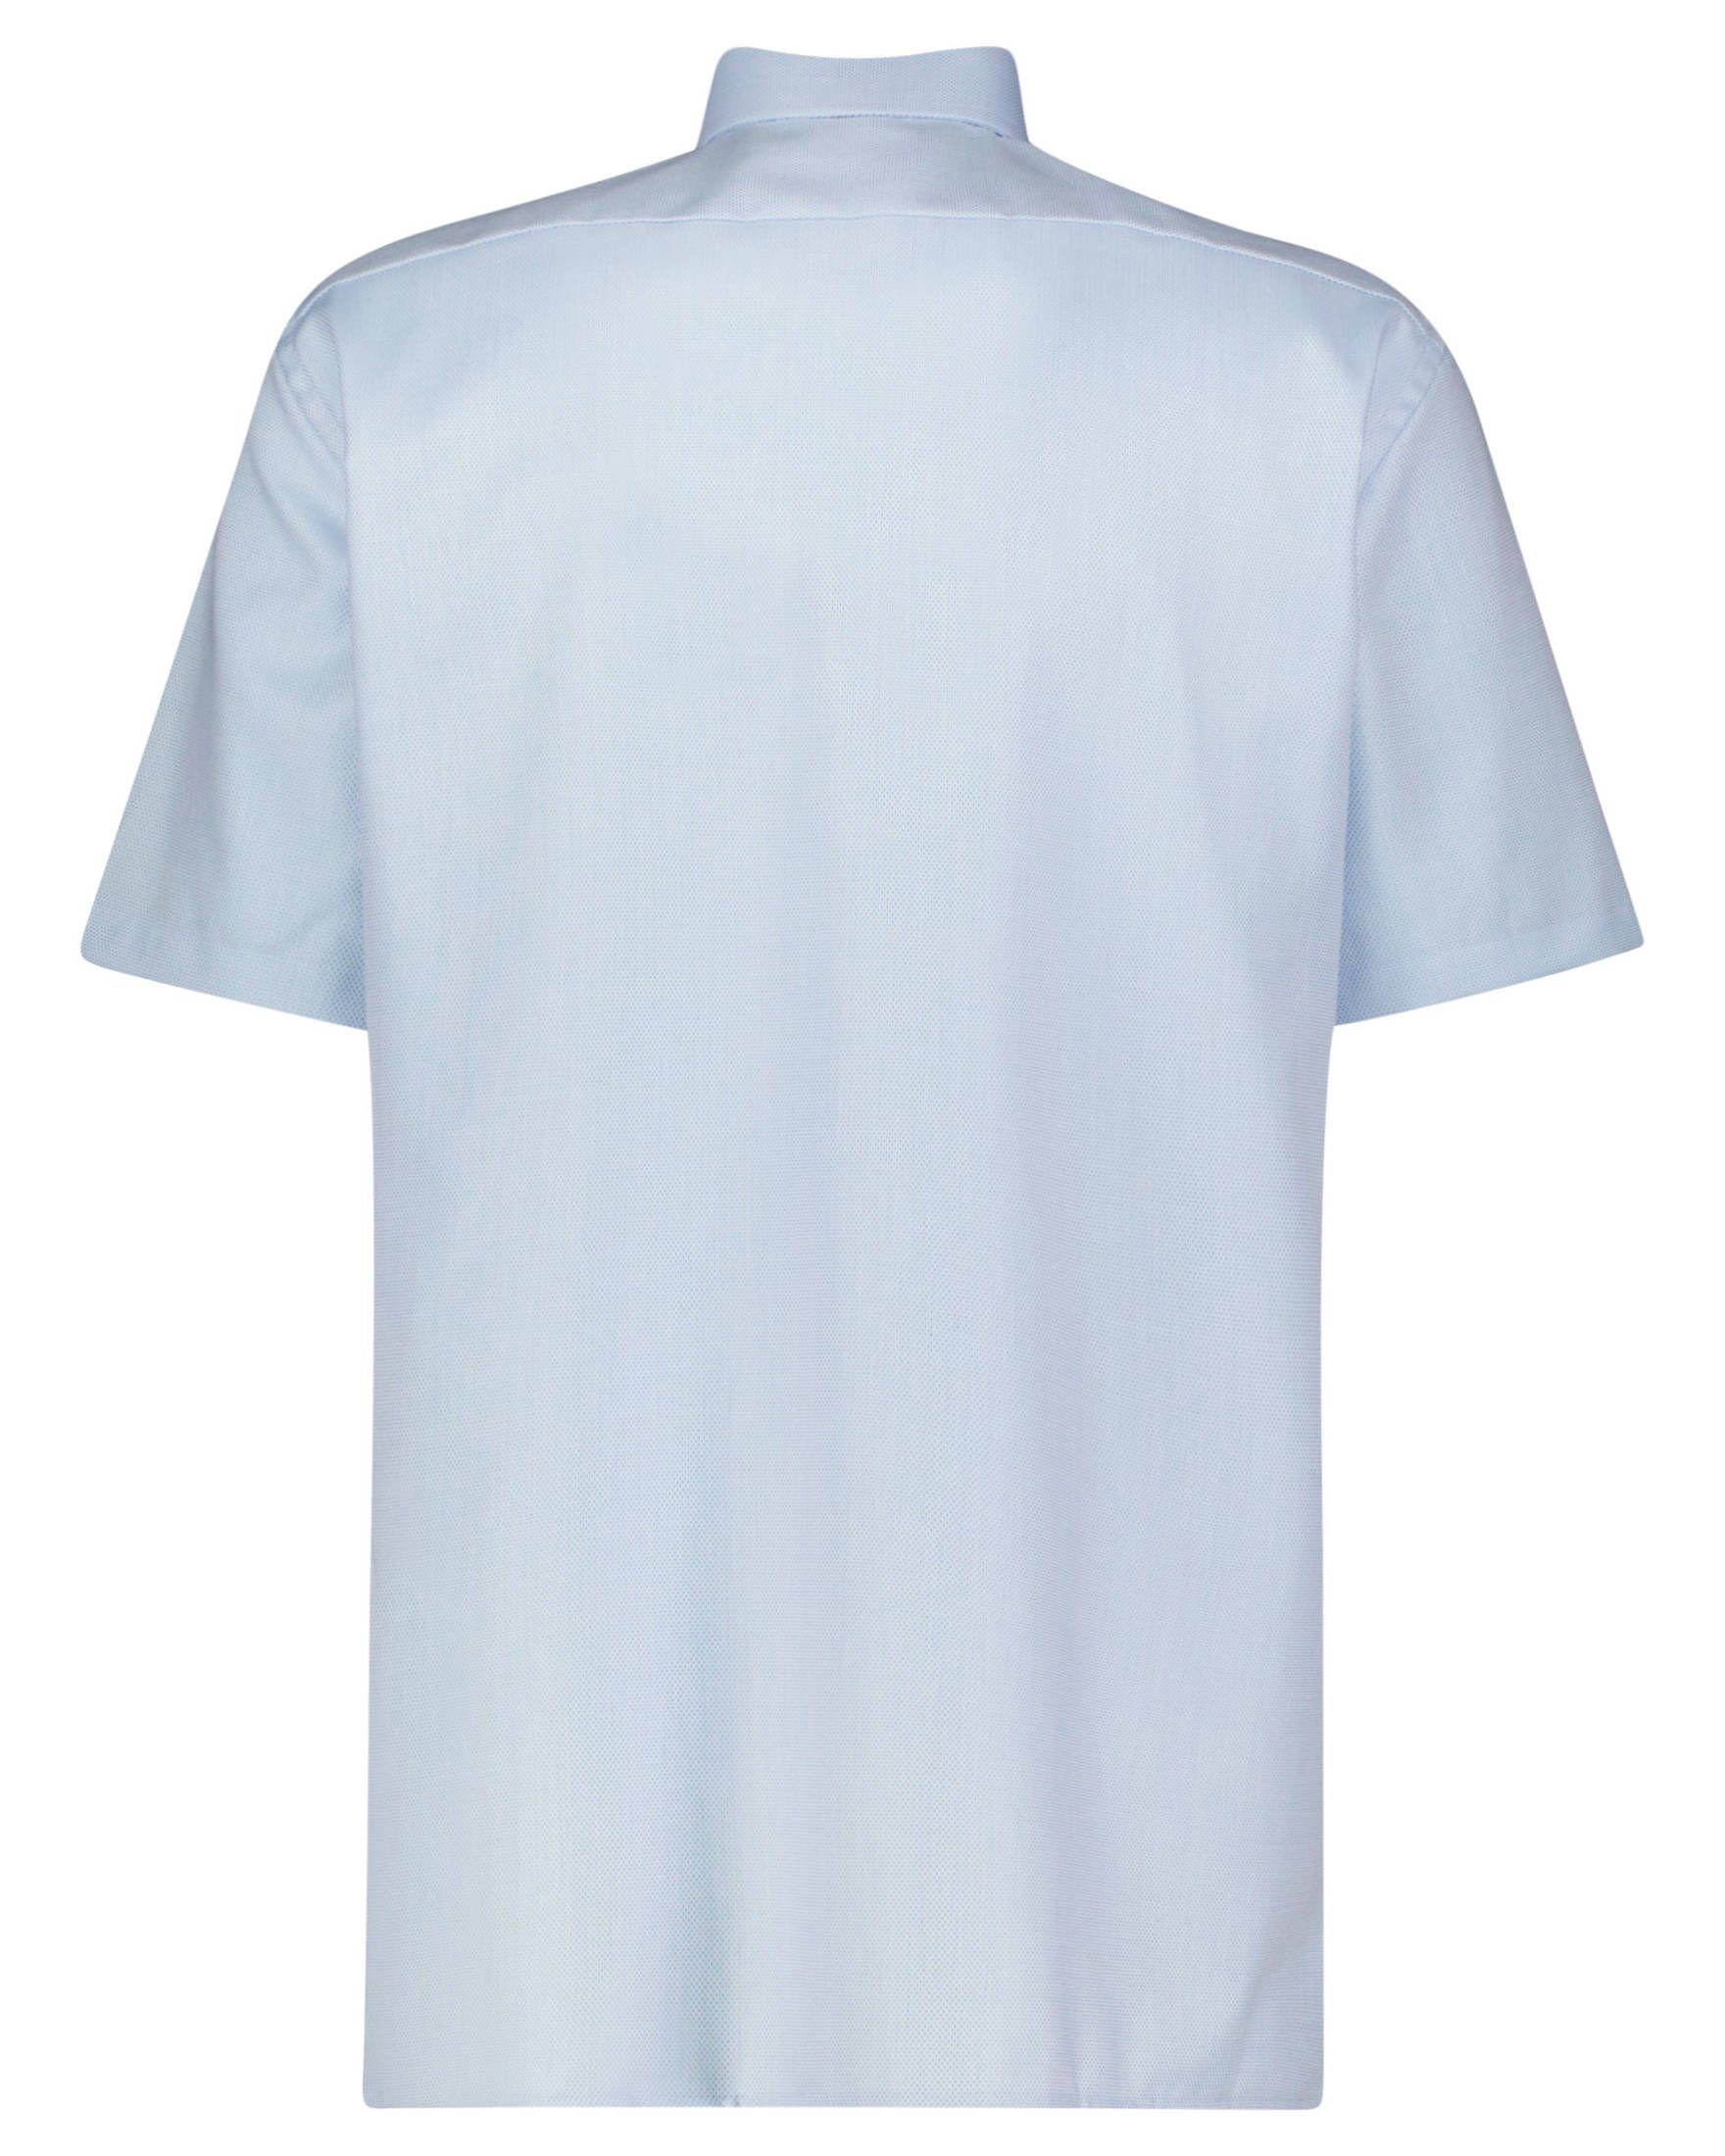 OLYMP Kurzarmhemd Luxor modern fit, Aufgesetzte Brusttasche | Klassische Hemden